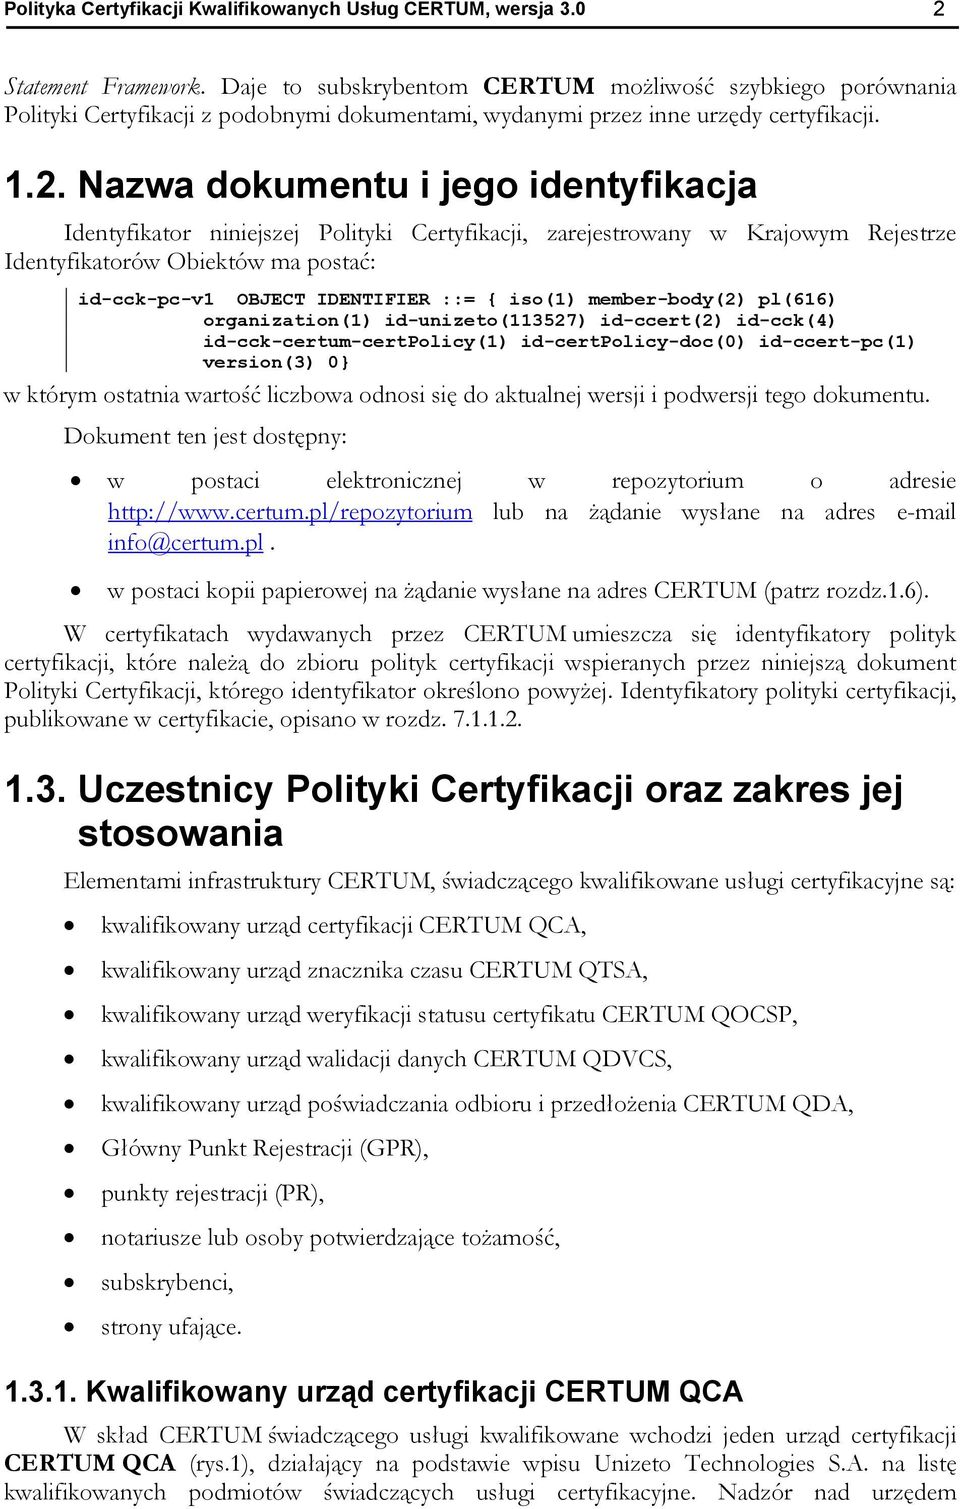 Nazwa dokumentu i jego identyfikacja Identyfikator niniejszej Polityki Certyfikacji, zarejestrowany w Krajowym Rejestrze Identyfikatorów Obiektów ma postać: id-cck-pc-v1 OBJECT IDENTIFIER ::= {